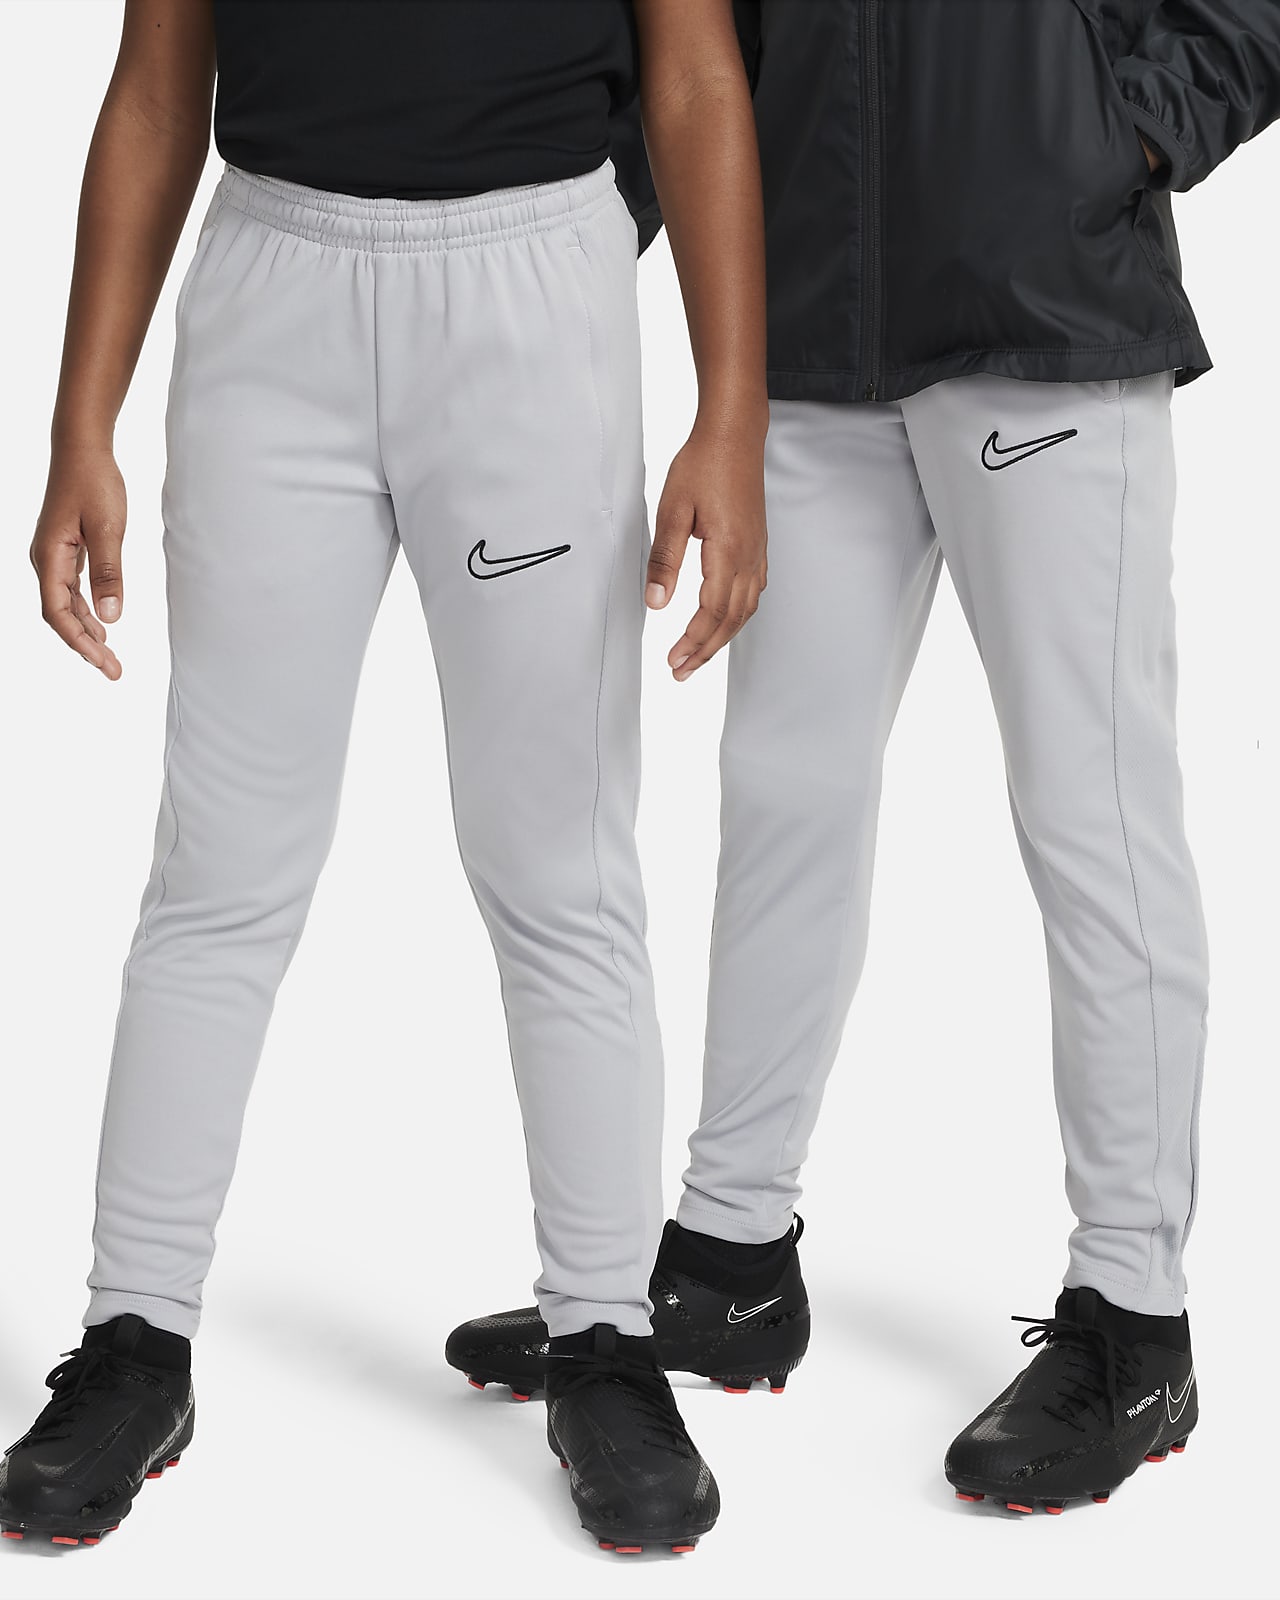 Nike Dri-FIT Big Kids' (Boys') Woven Training Pants. Nike.com